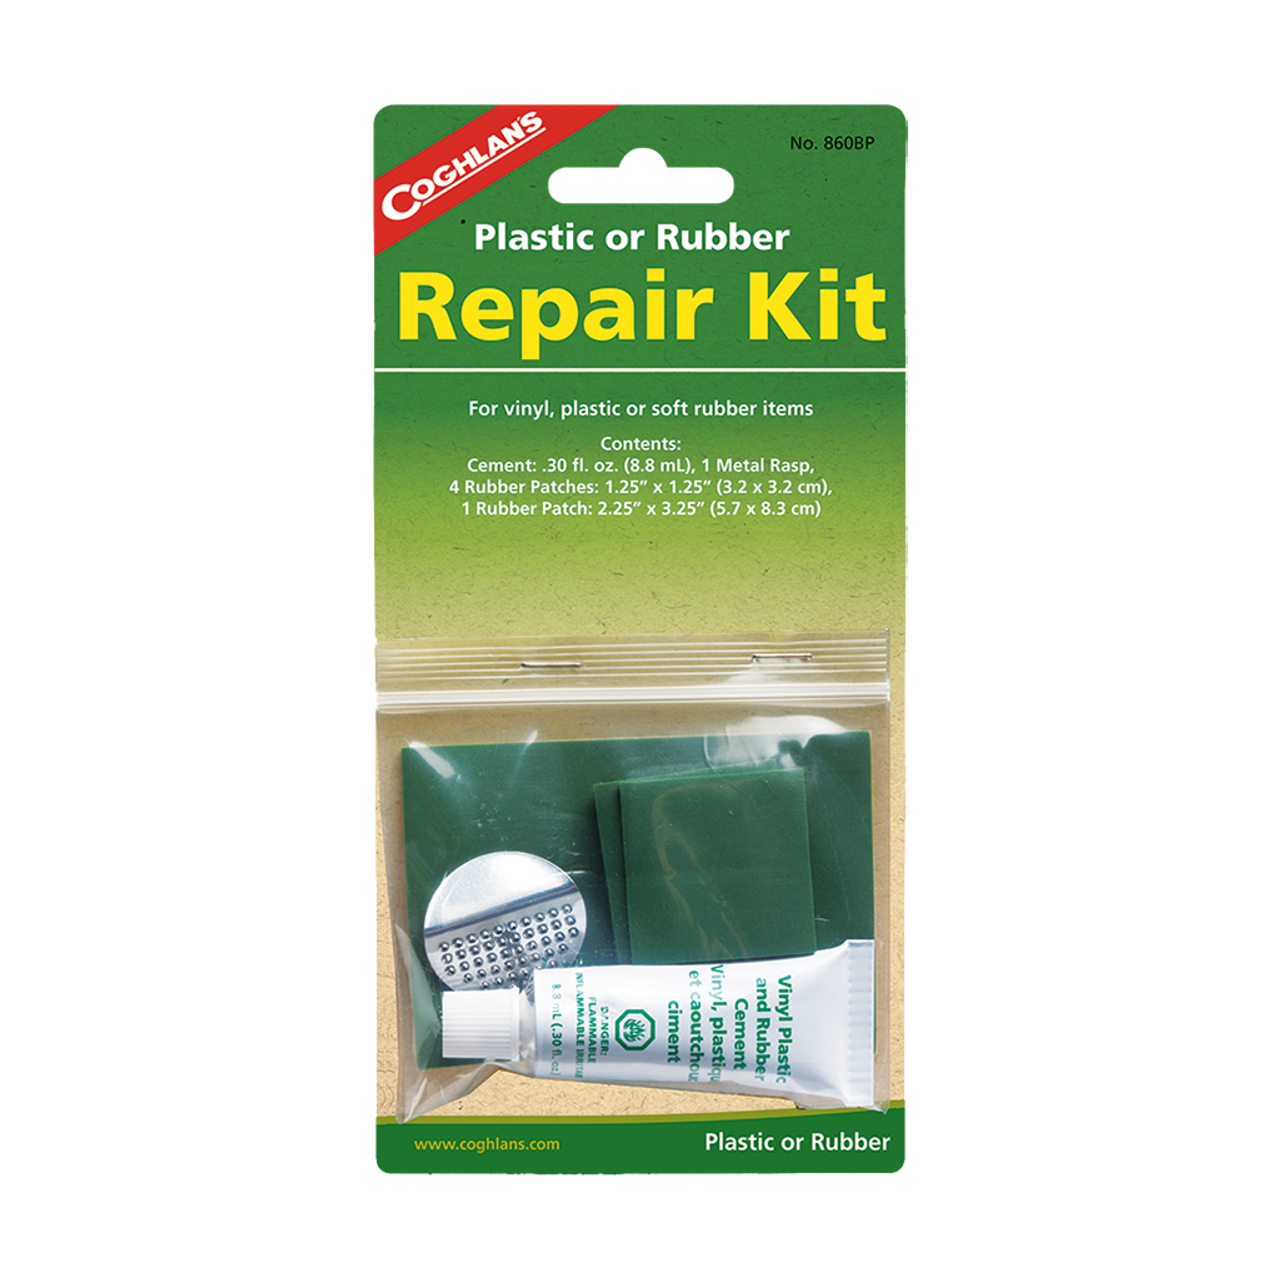 Plastic or Rubber Repair Kit